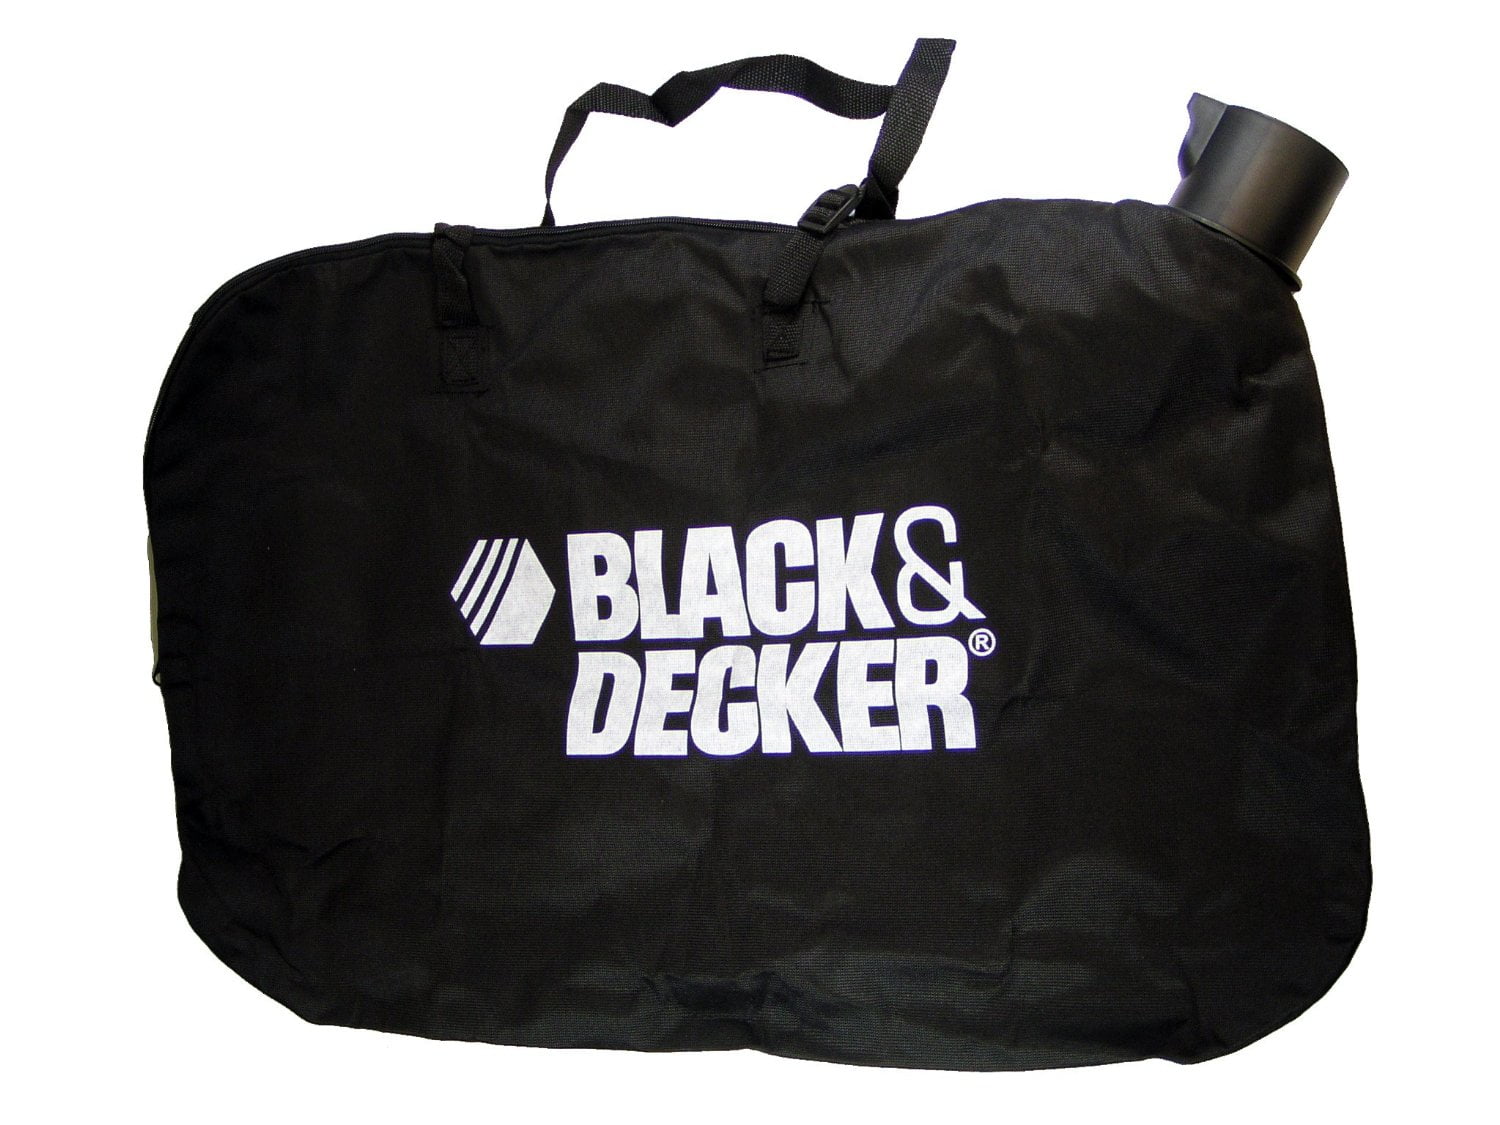 Black+Decker BV6600 VS BV3600 - Spec & Feature Comparison